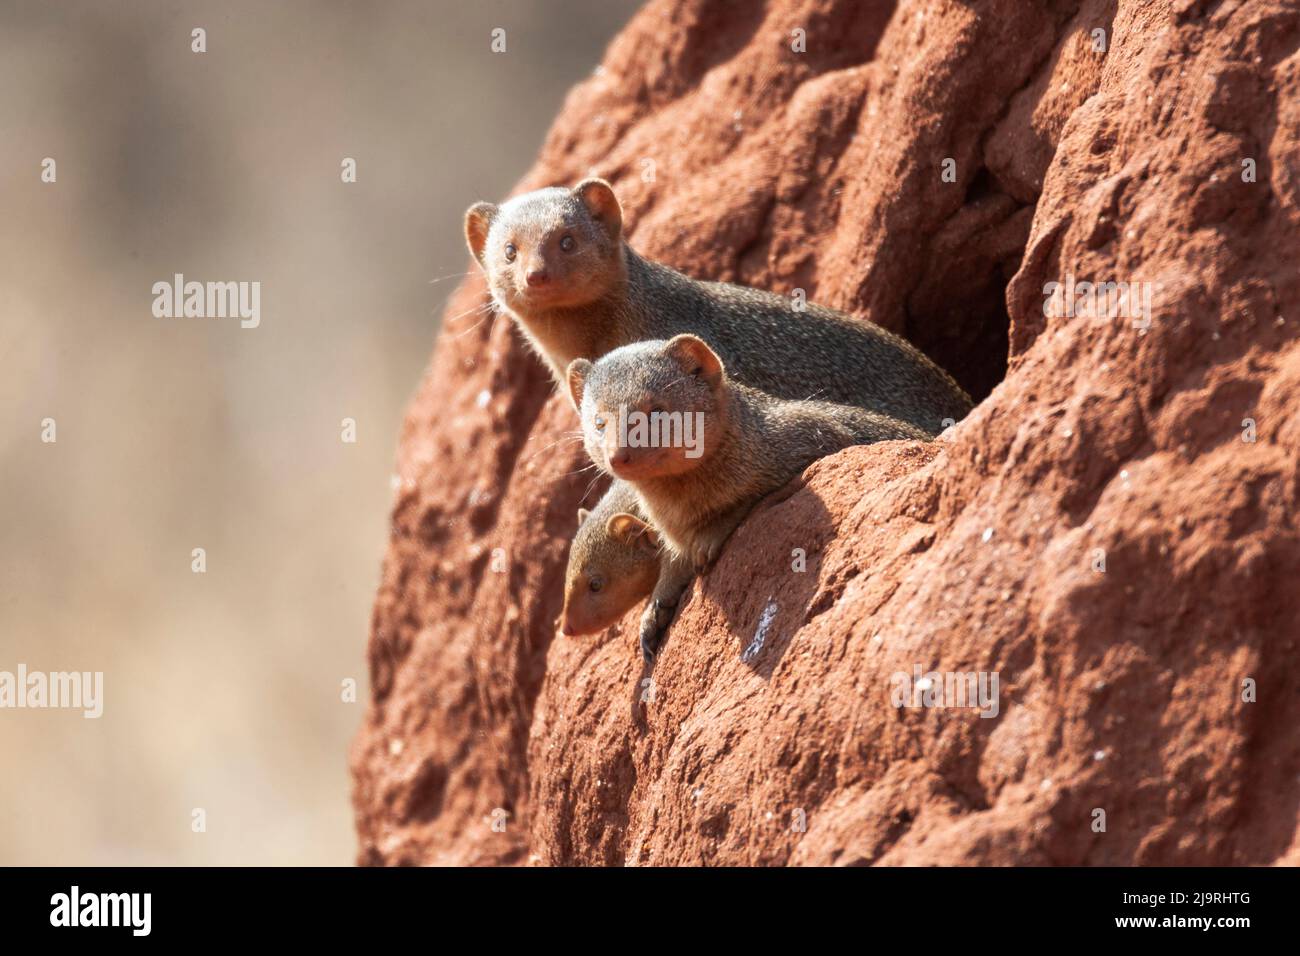 Africa, Tanzania. Alcuni mongooses nani osservano fuori dalla loro sede in un tumulo di termite. Foto Stock